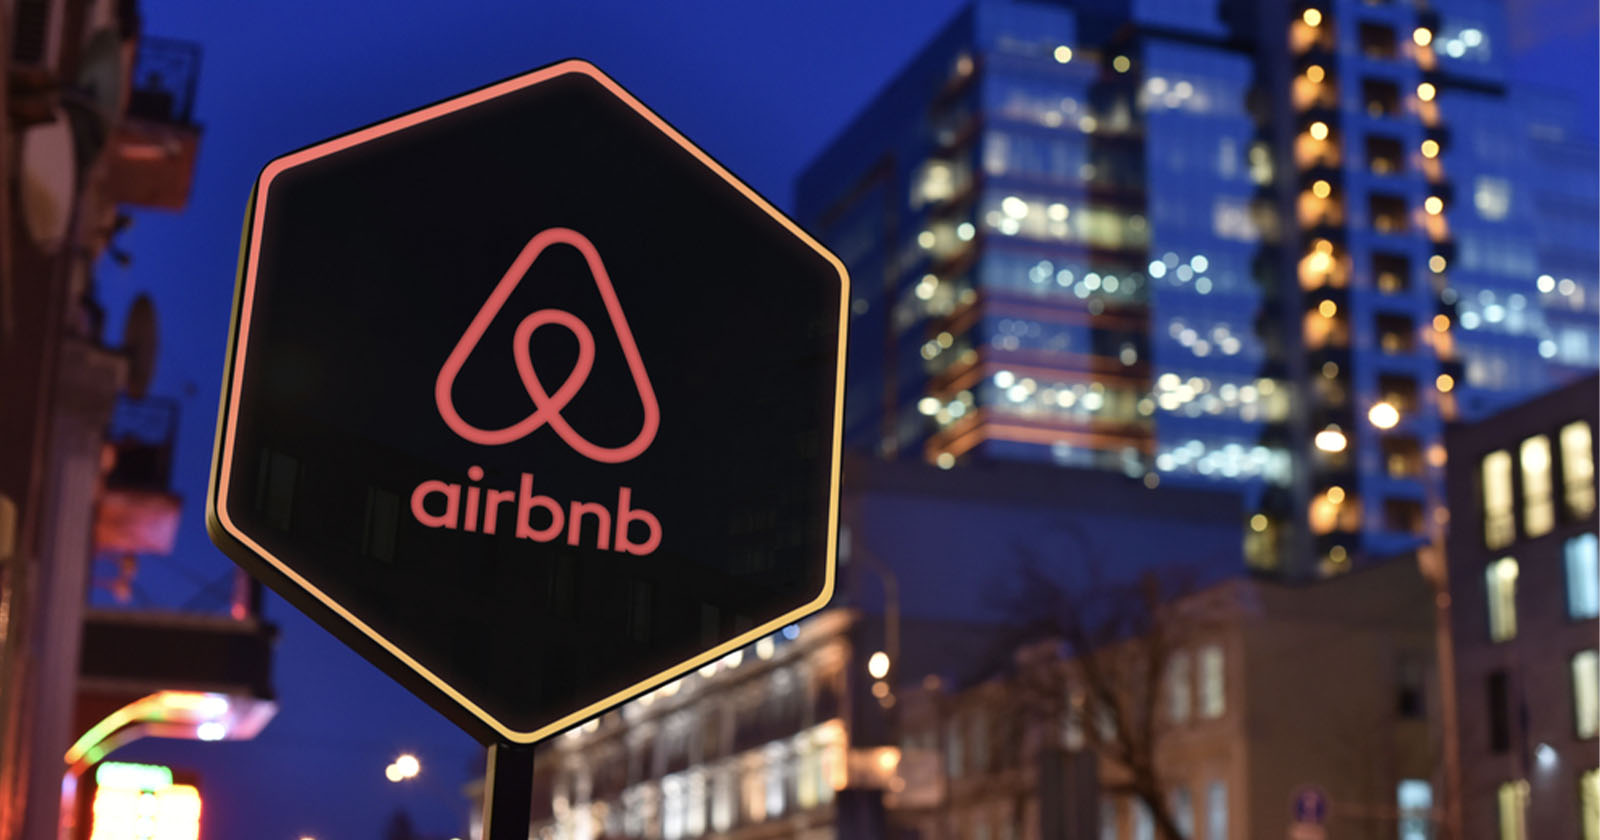  airbnb hosts will longer allowed install indoor cameras 